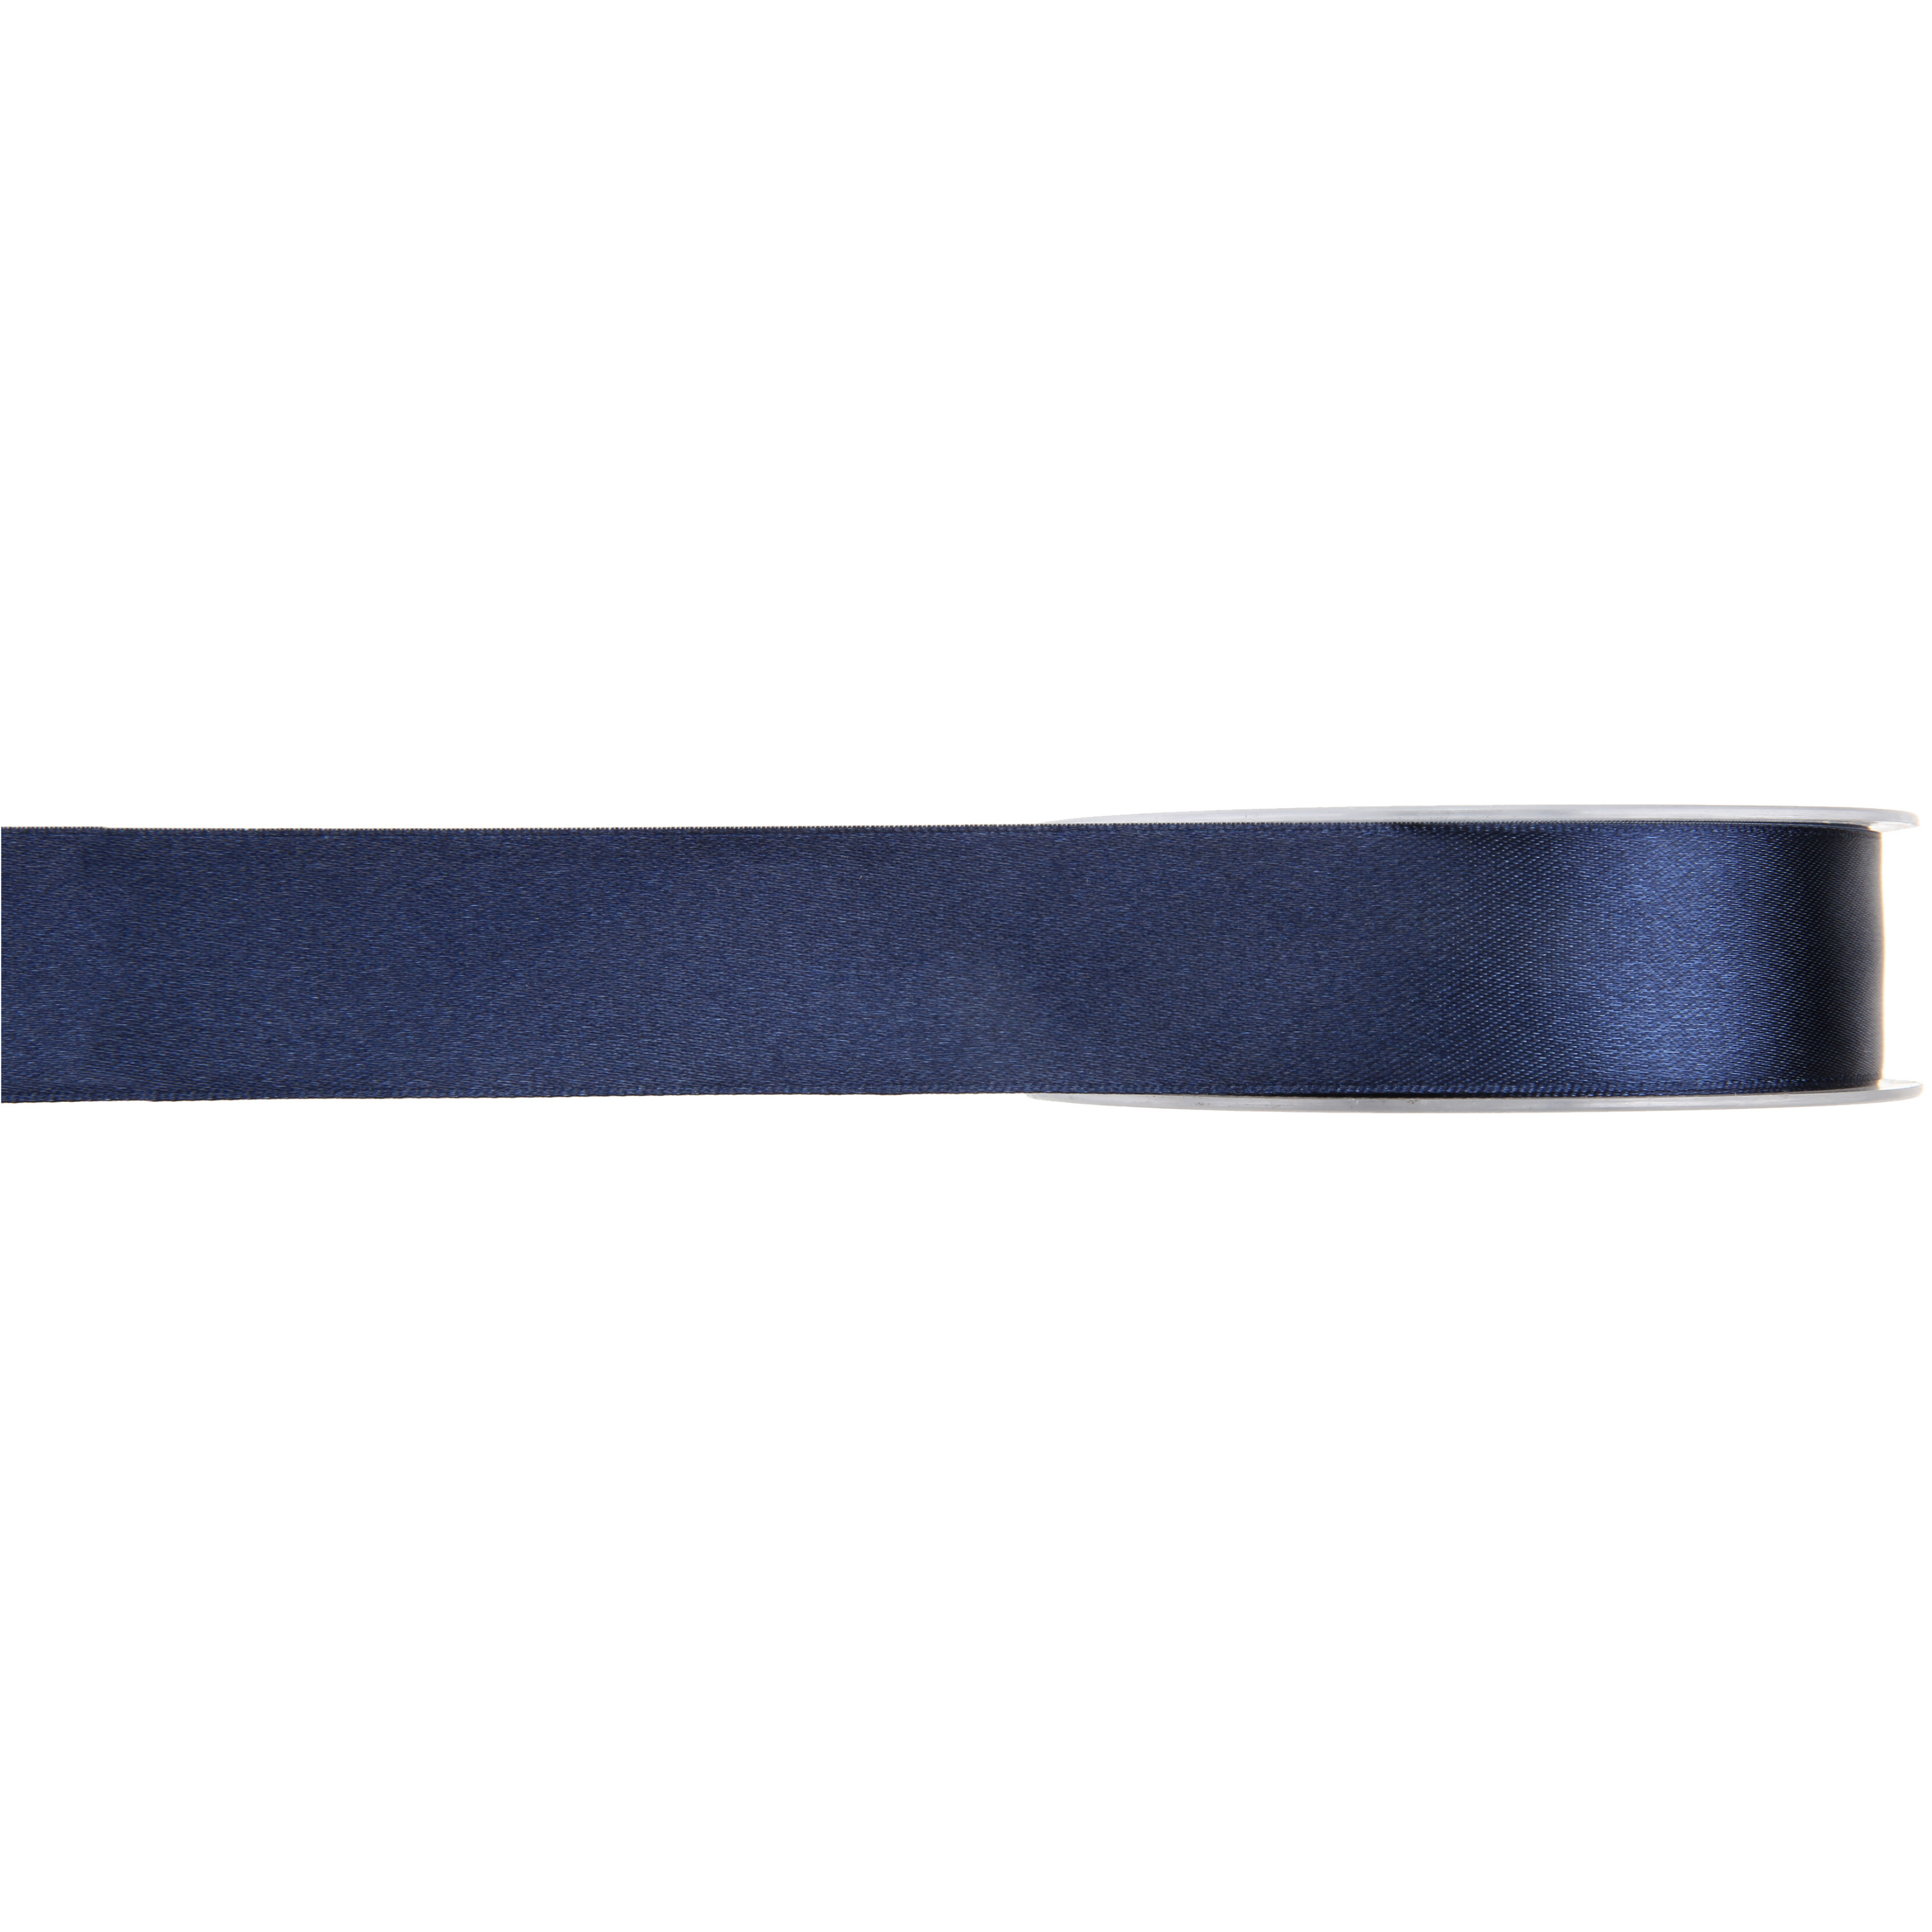 1x Hobby-decoratie navyblauwe satijnen sierlinten 1 cm-10 mm x 25 meter